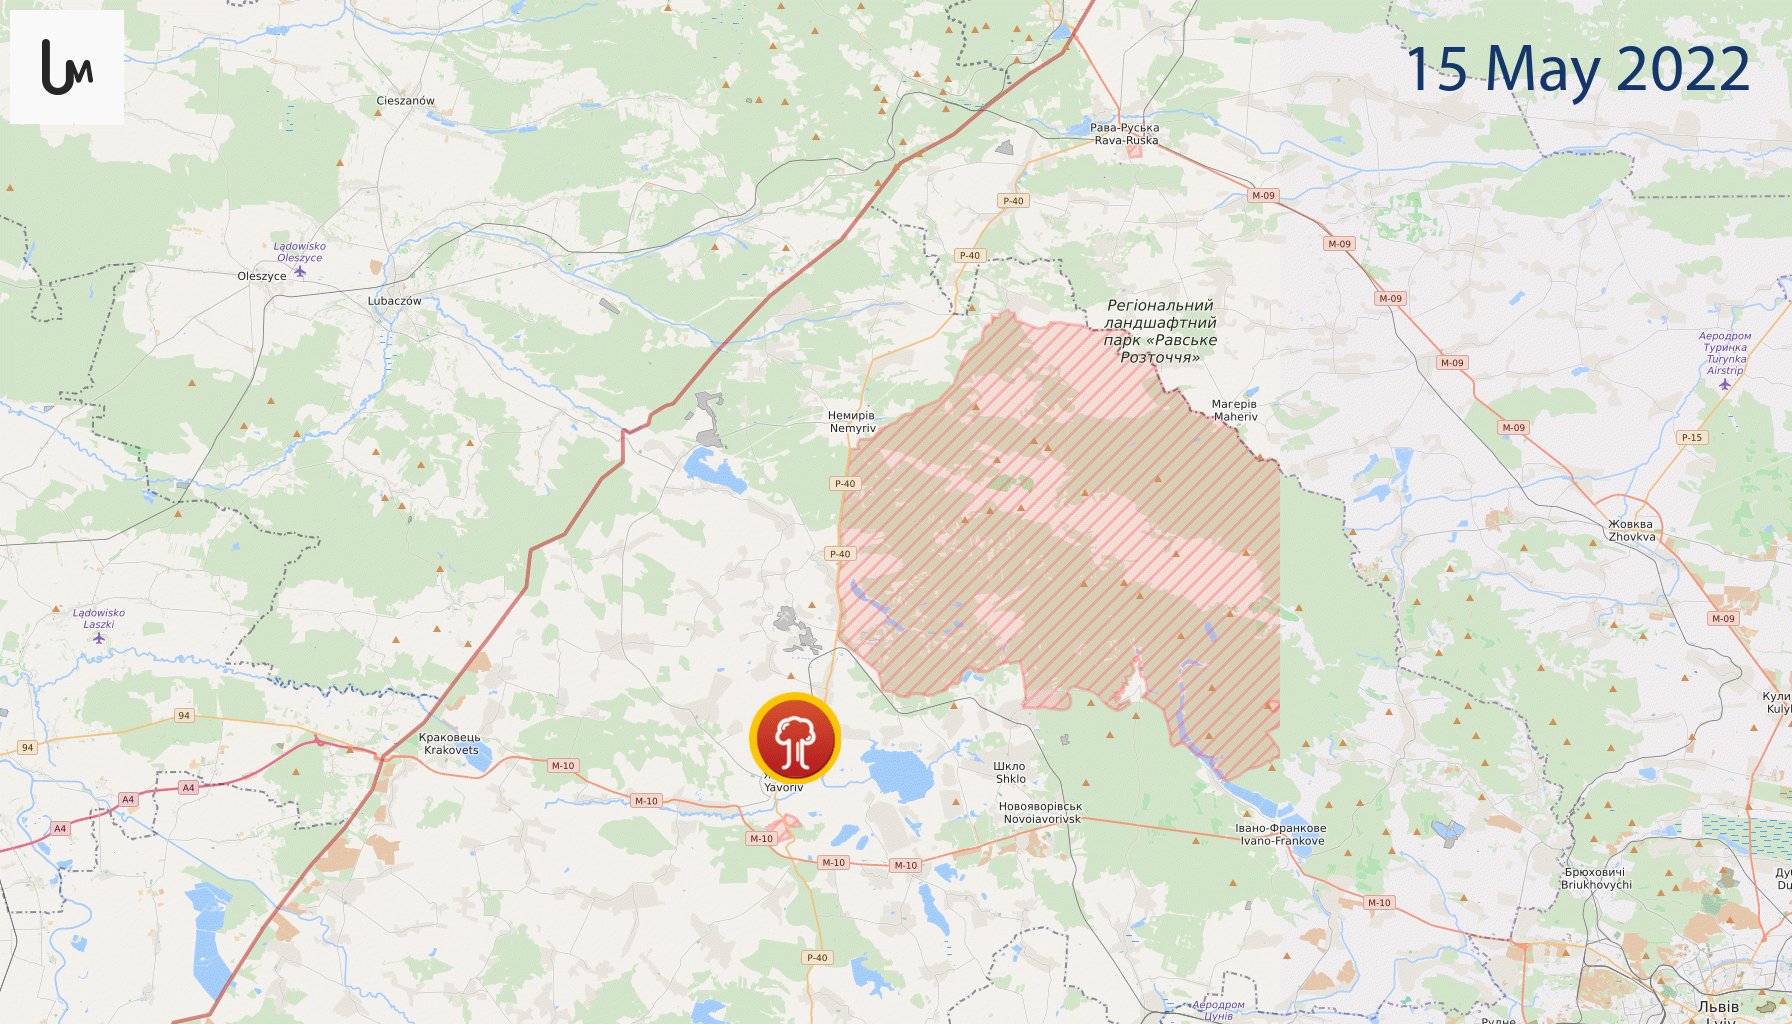 Ucraina, bombe russe su una base militare al confine con la Polonia. Esplosioni a Leopoli – Il live blog